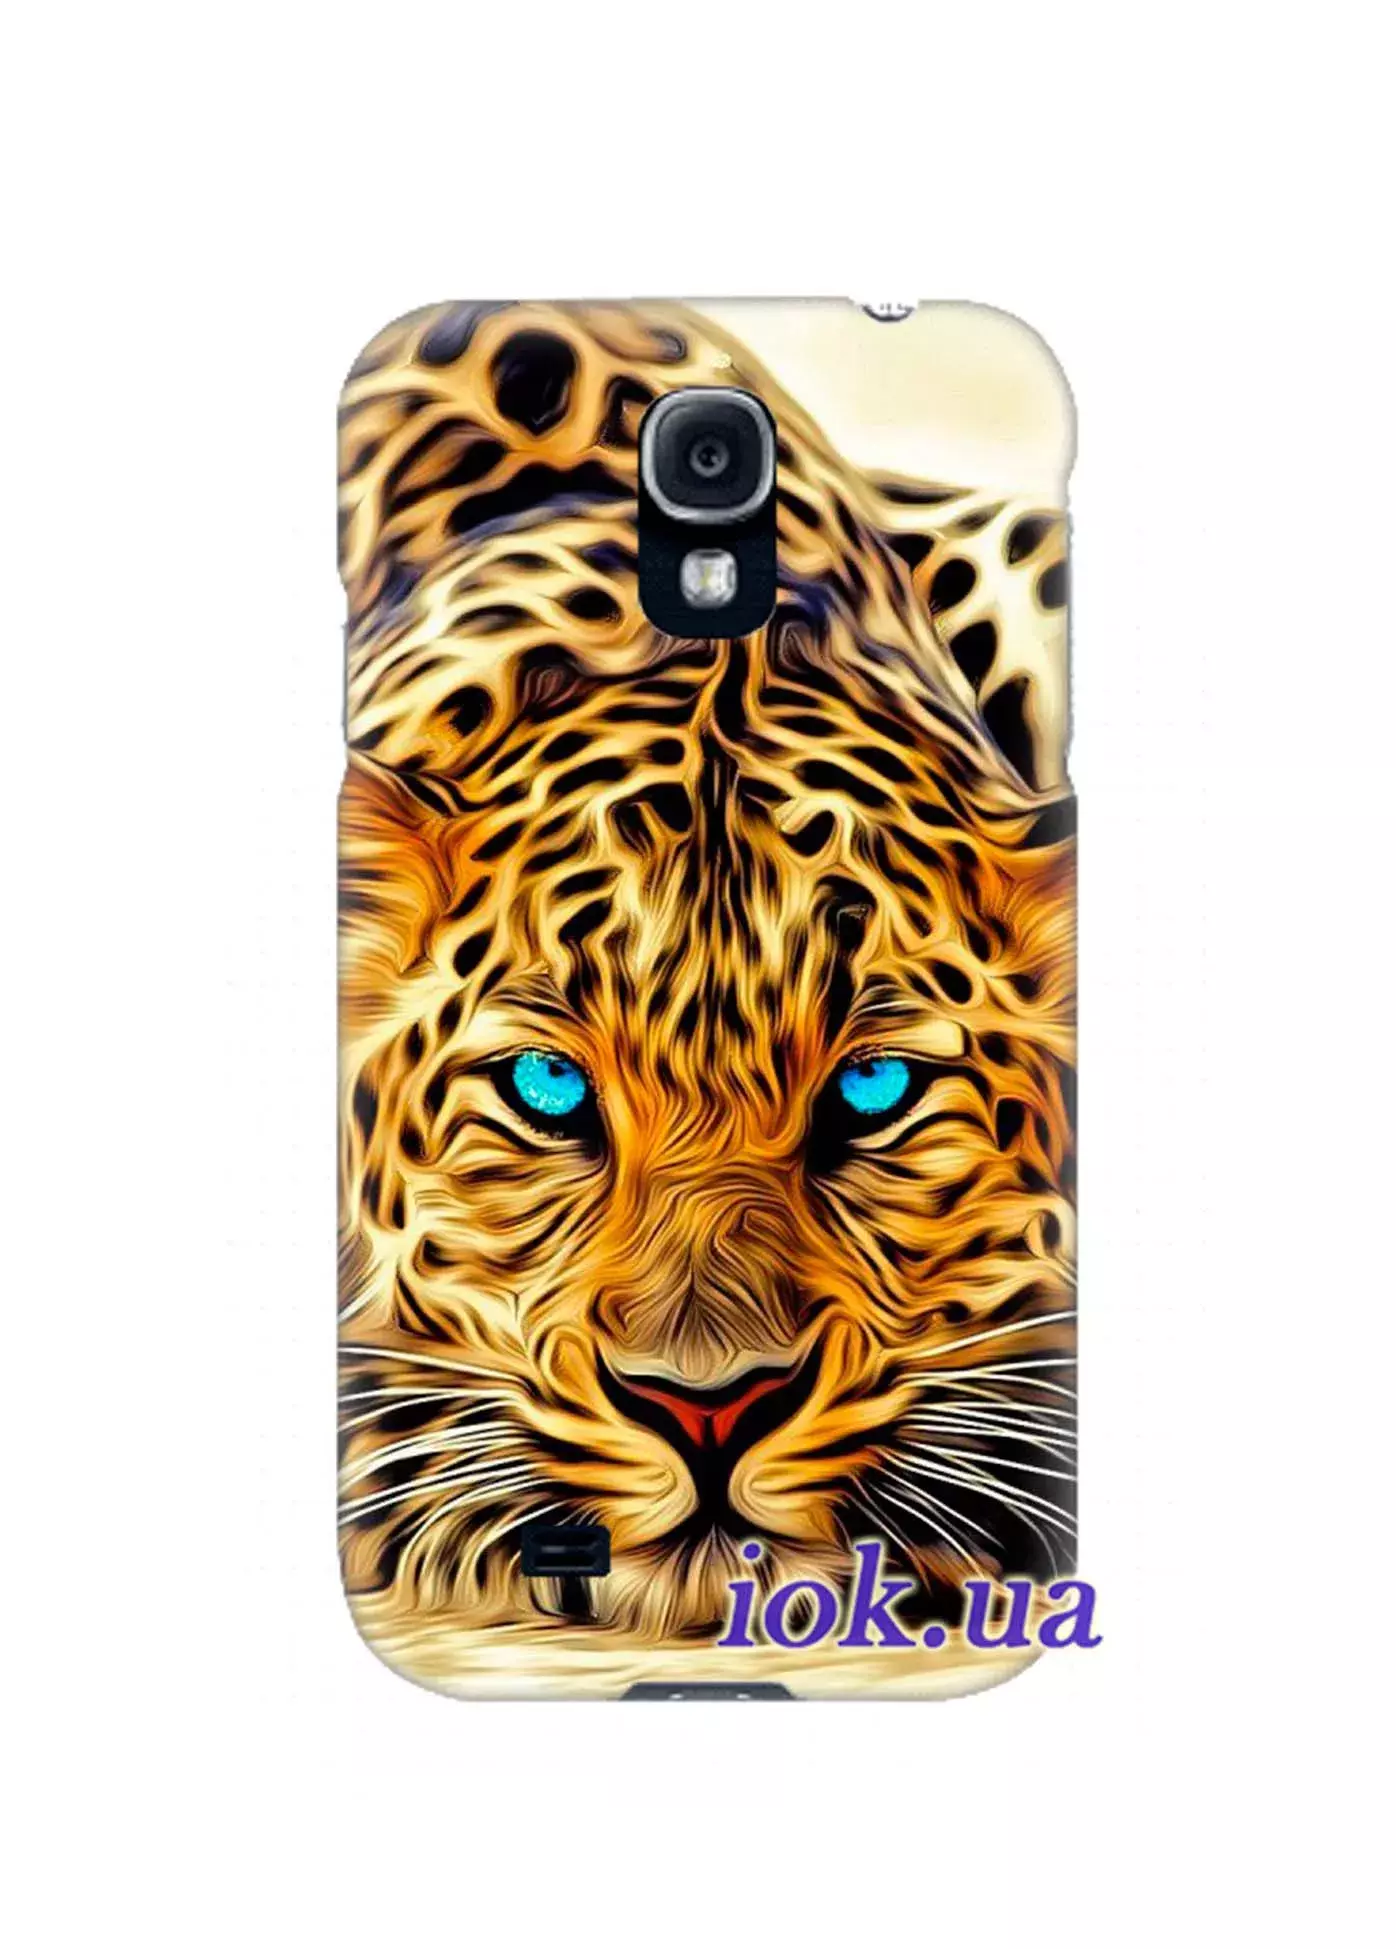 Чехол на Galaxy S4 mini - Леопард